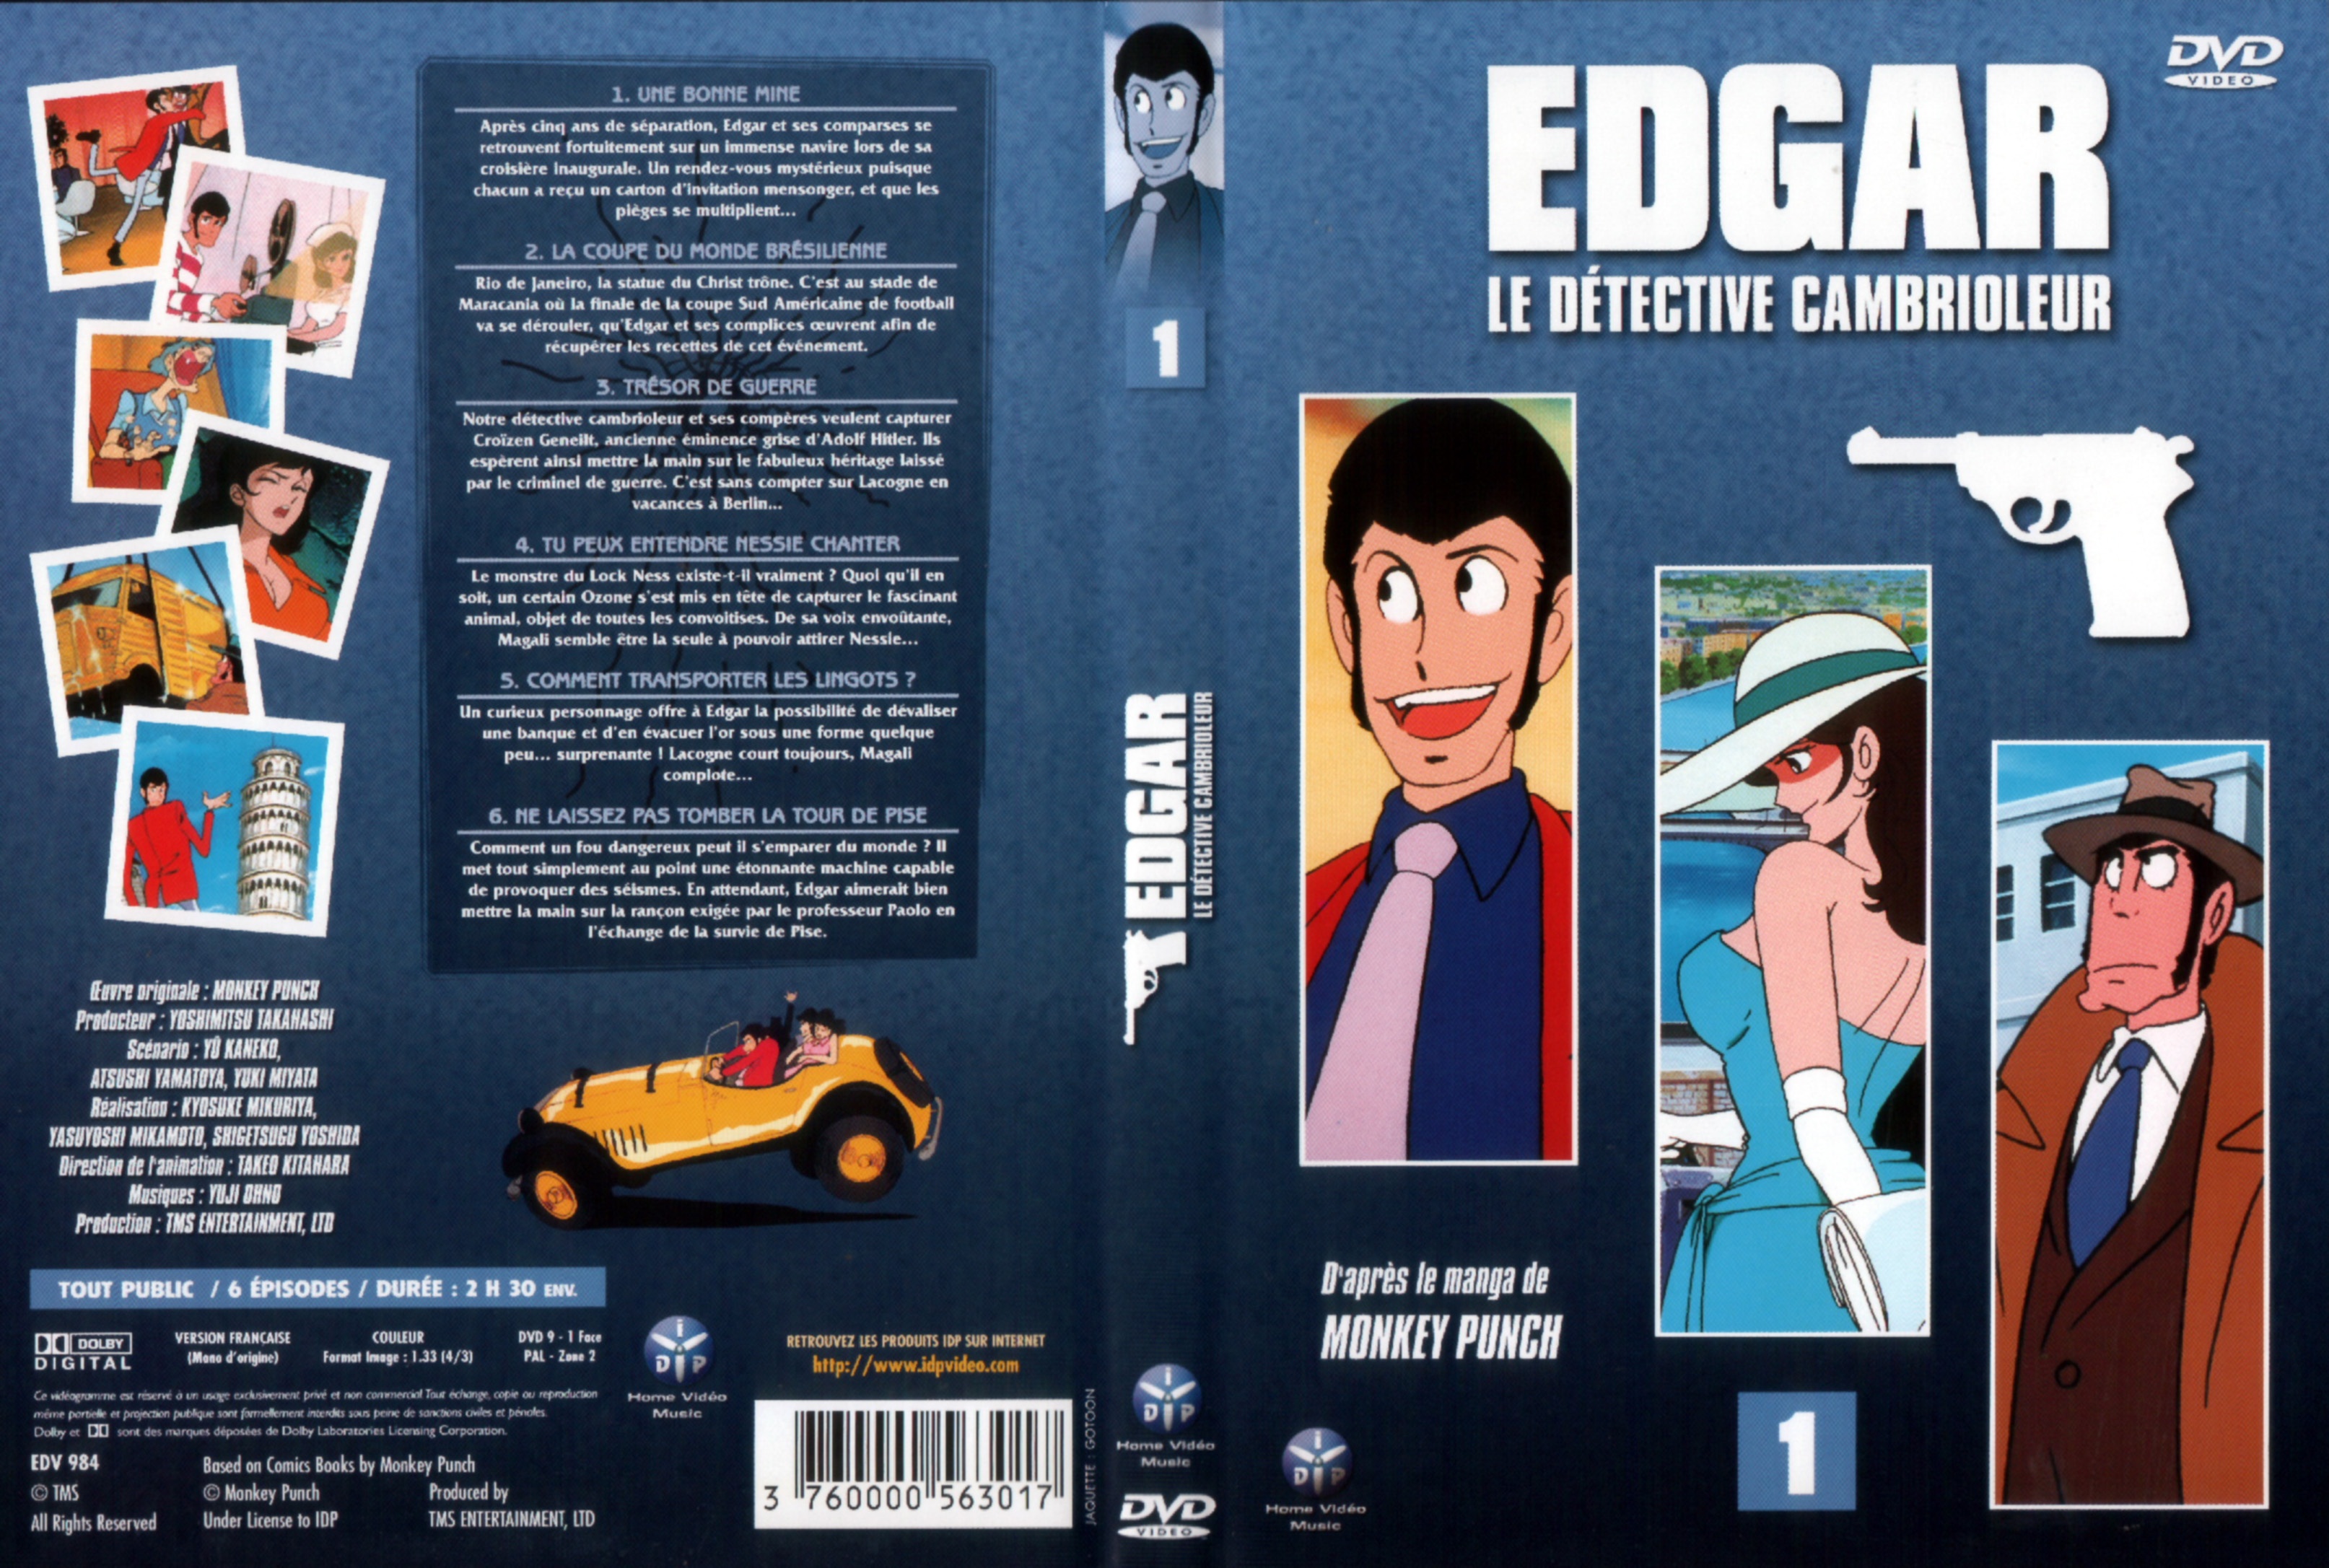 Jaquette DVD Edgar le detective cambrioleur DVD 01